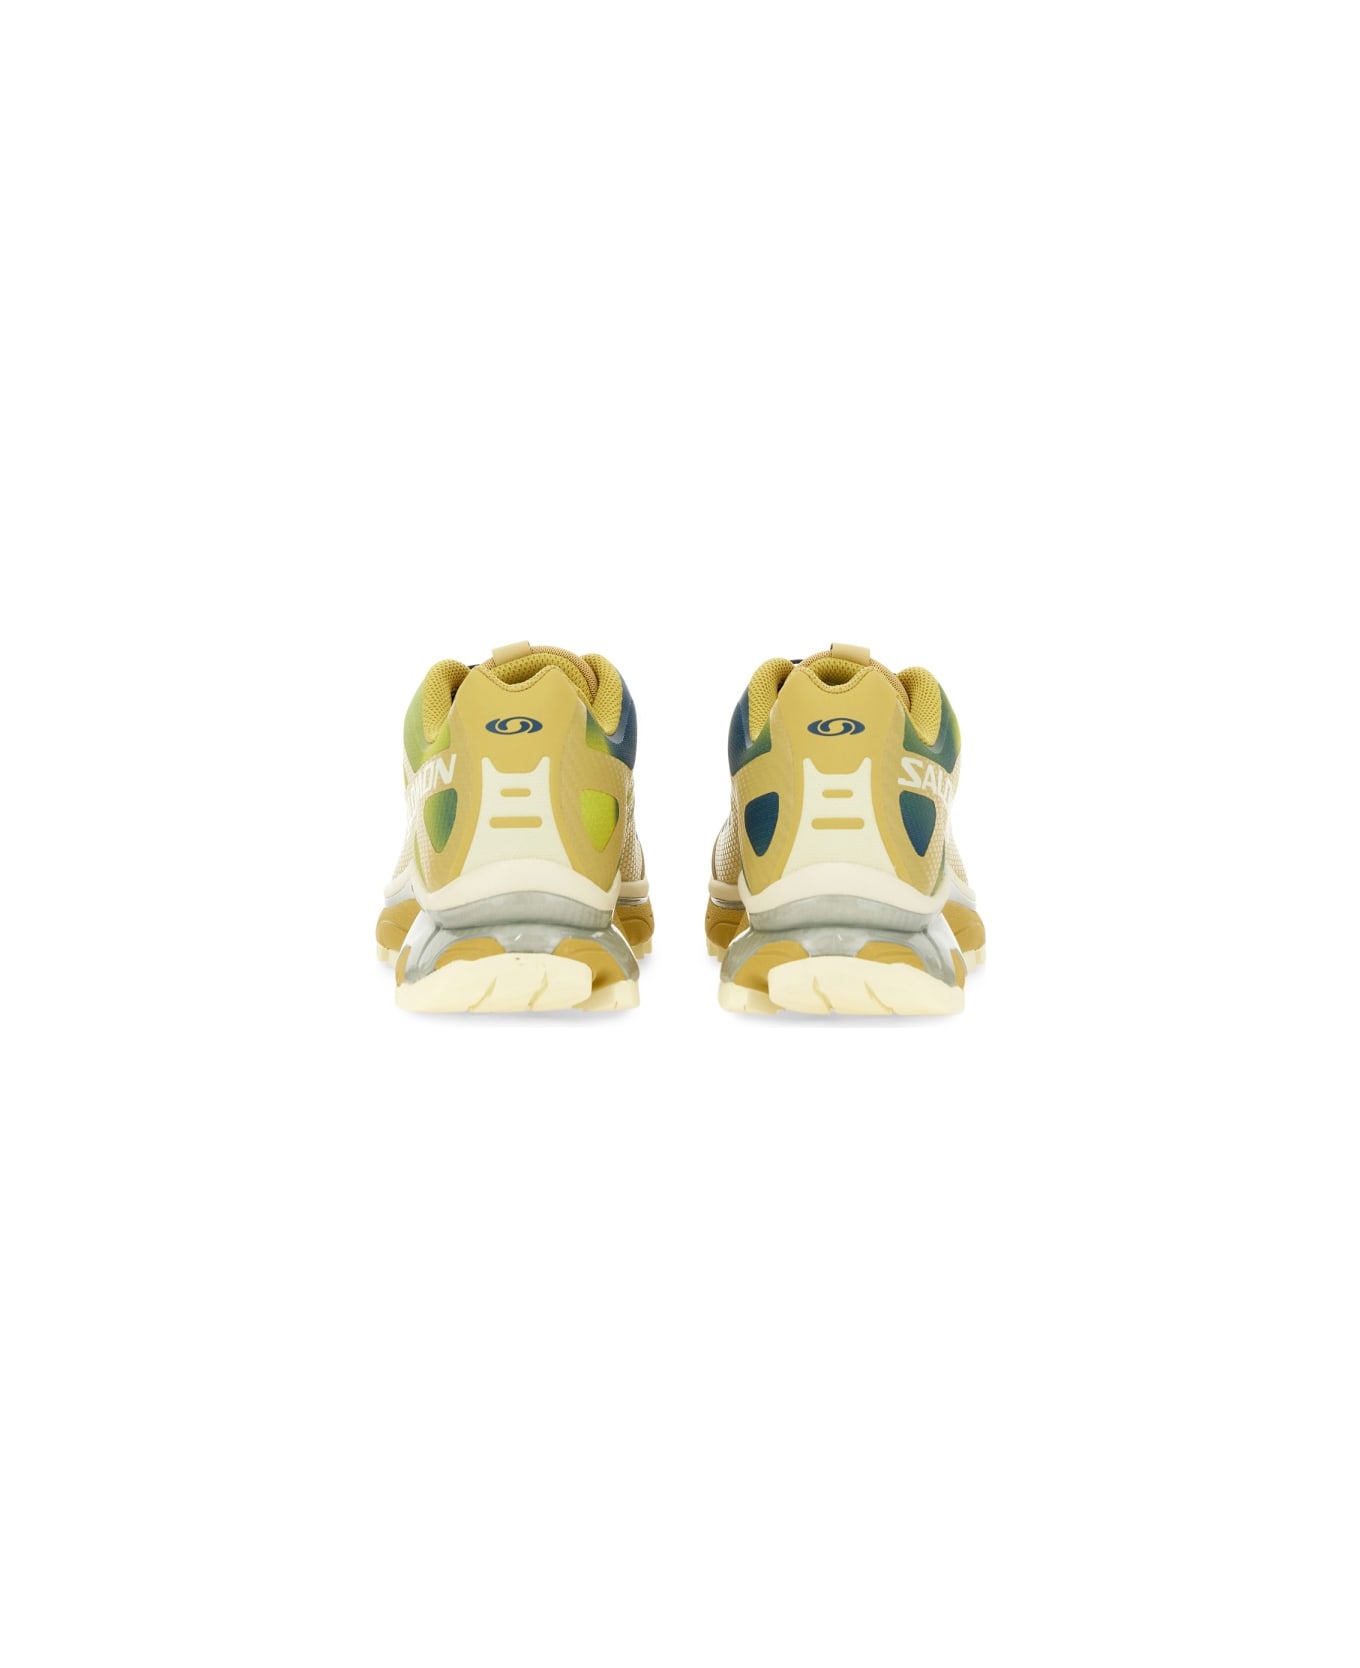 Salomon Sneaker "xt-4 Og Aurora Borealis" - WHITE スニーカー